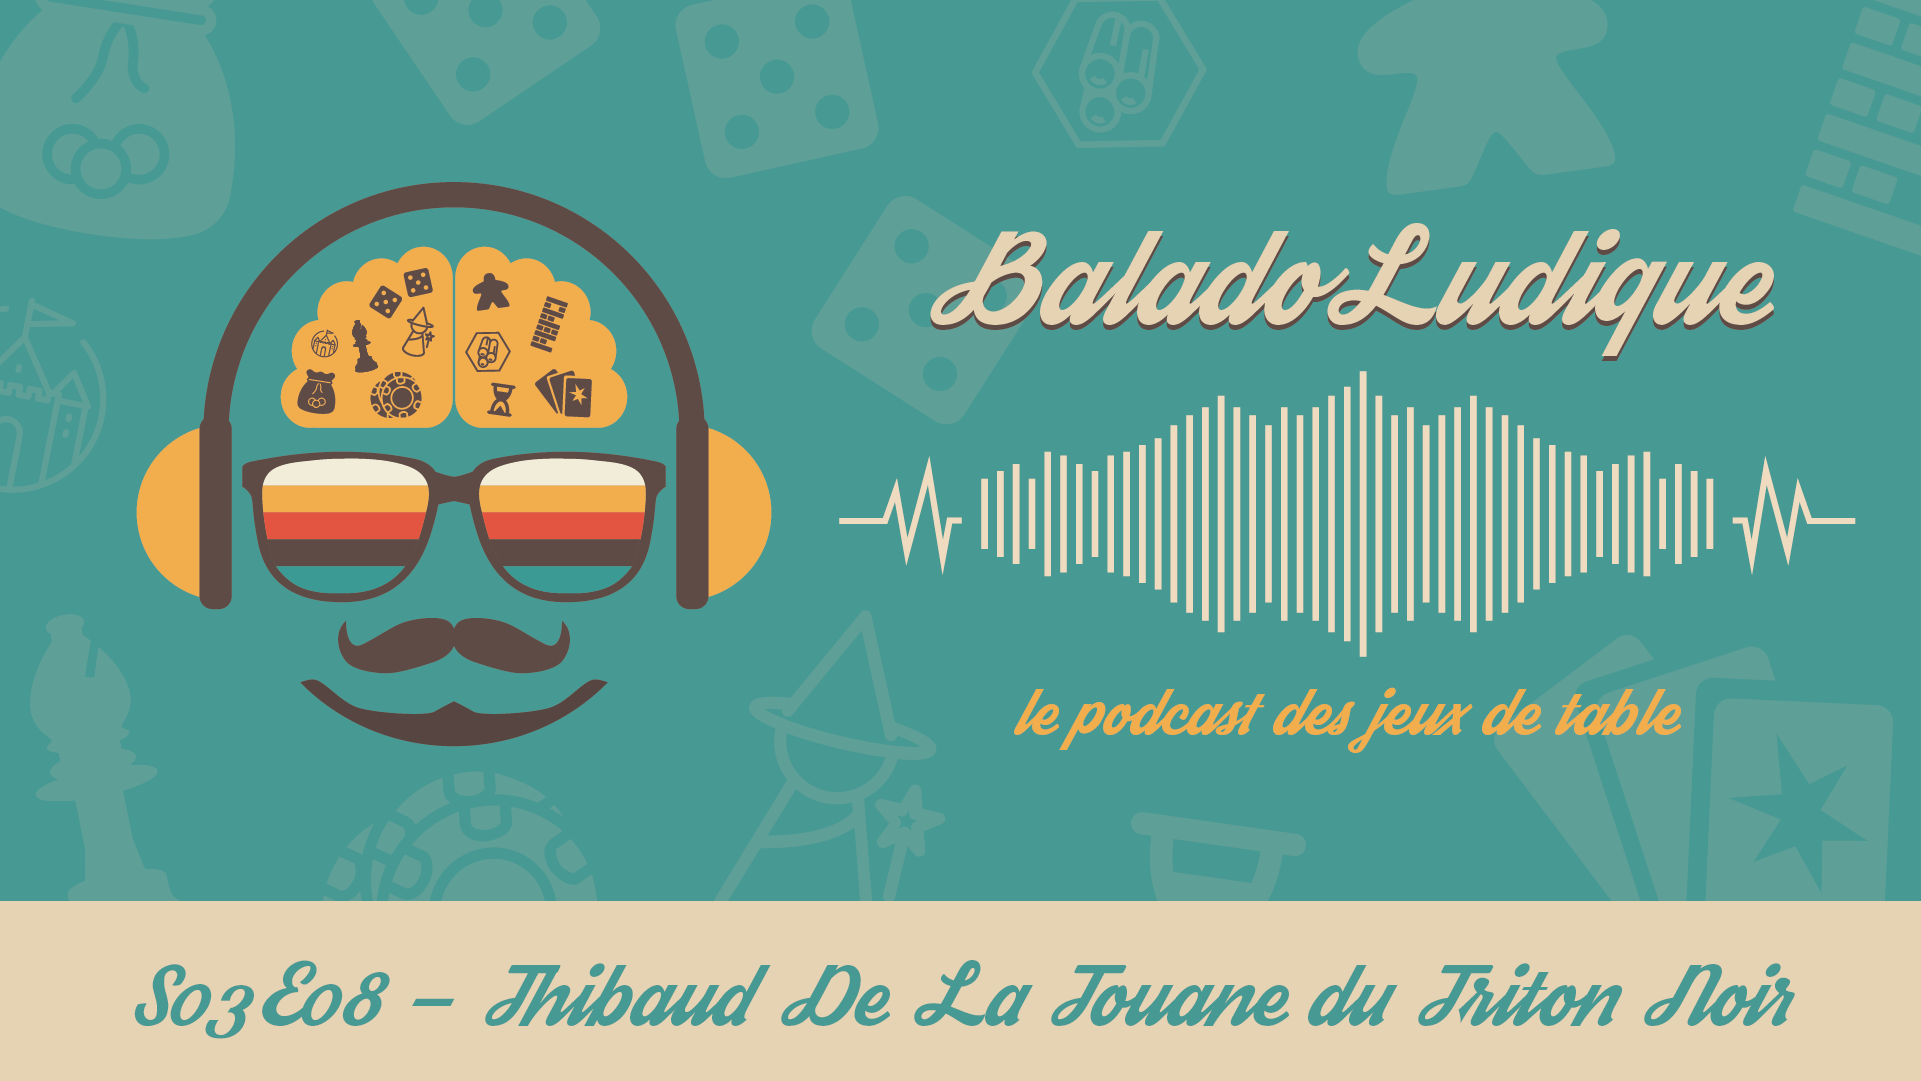 Thibaud De La Touane du Triton Noir - BaladoLudique - s03-e08